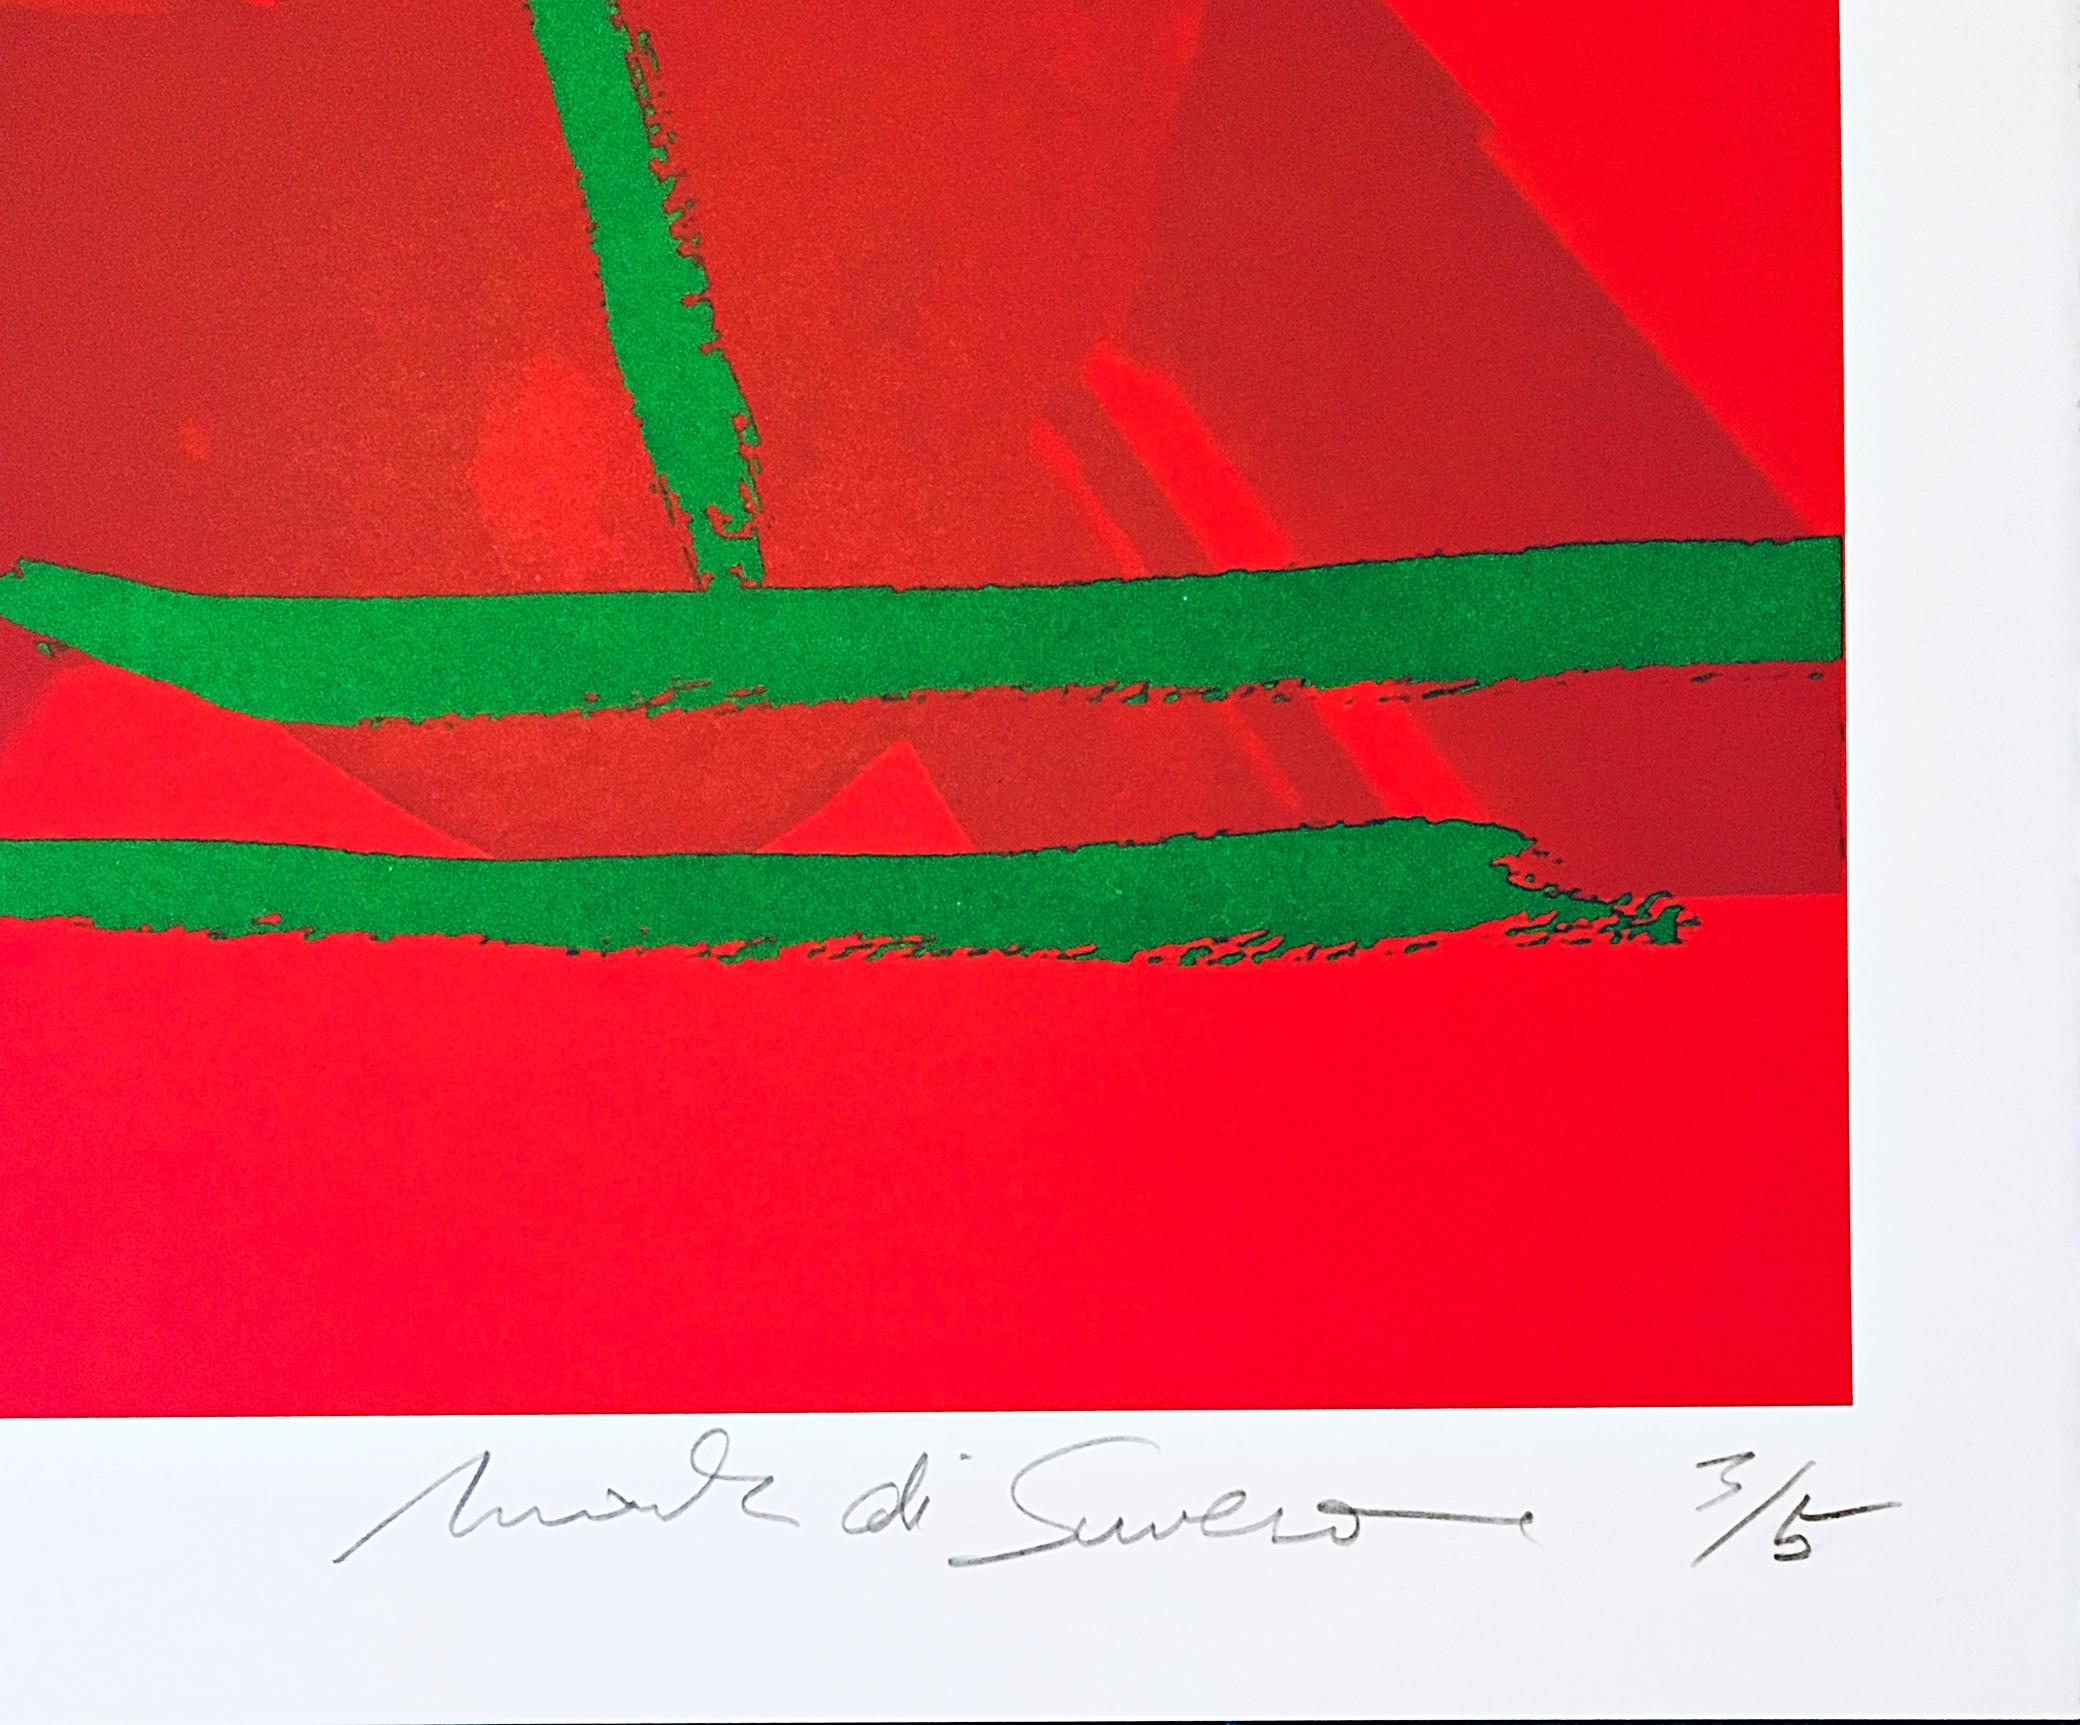 Abstrakt-expressionistische Lithographie Bleistift signiert nummeriert 3/5 Future Shadow II  – Print von Mark di Suvero